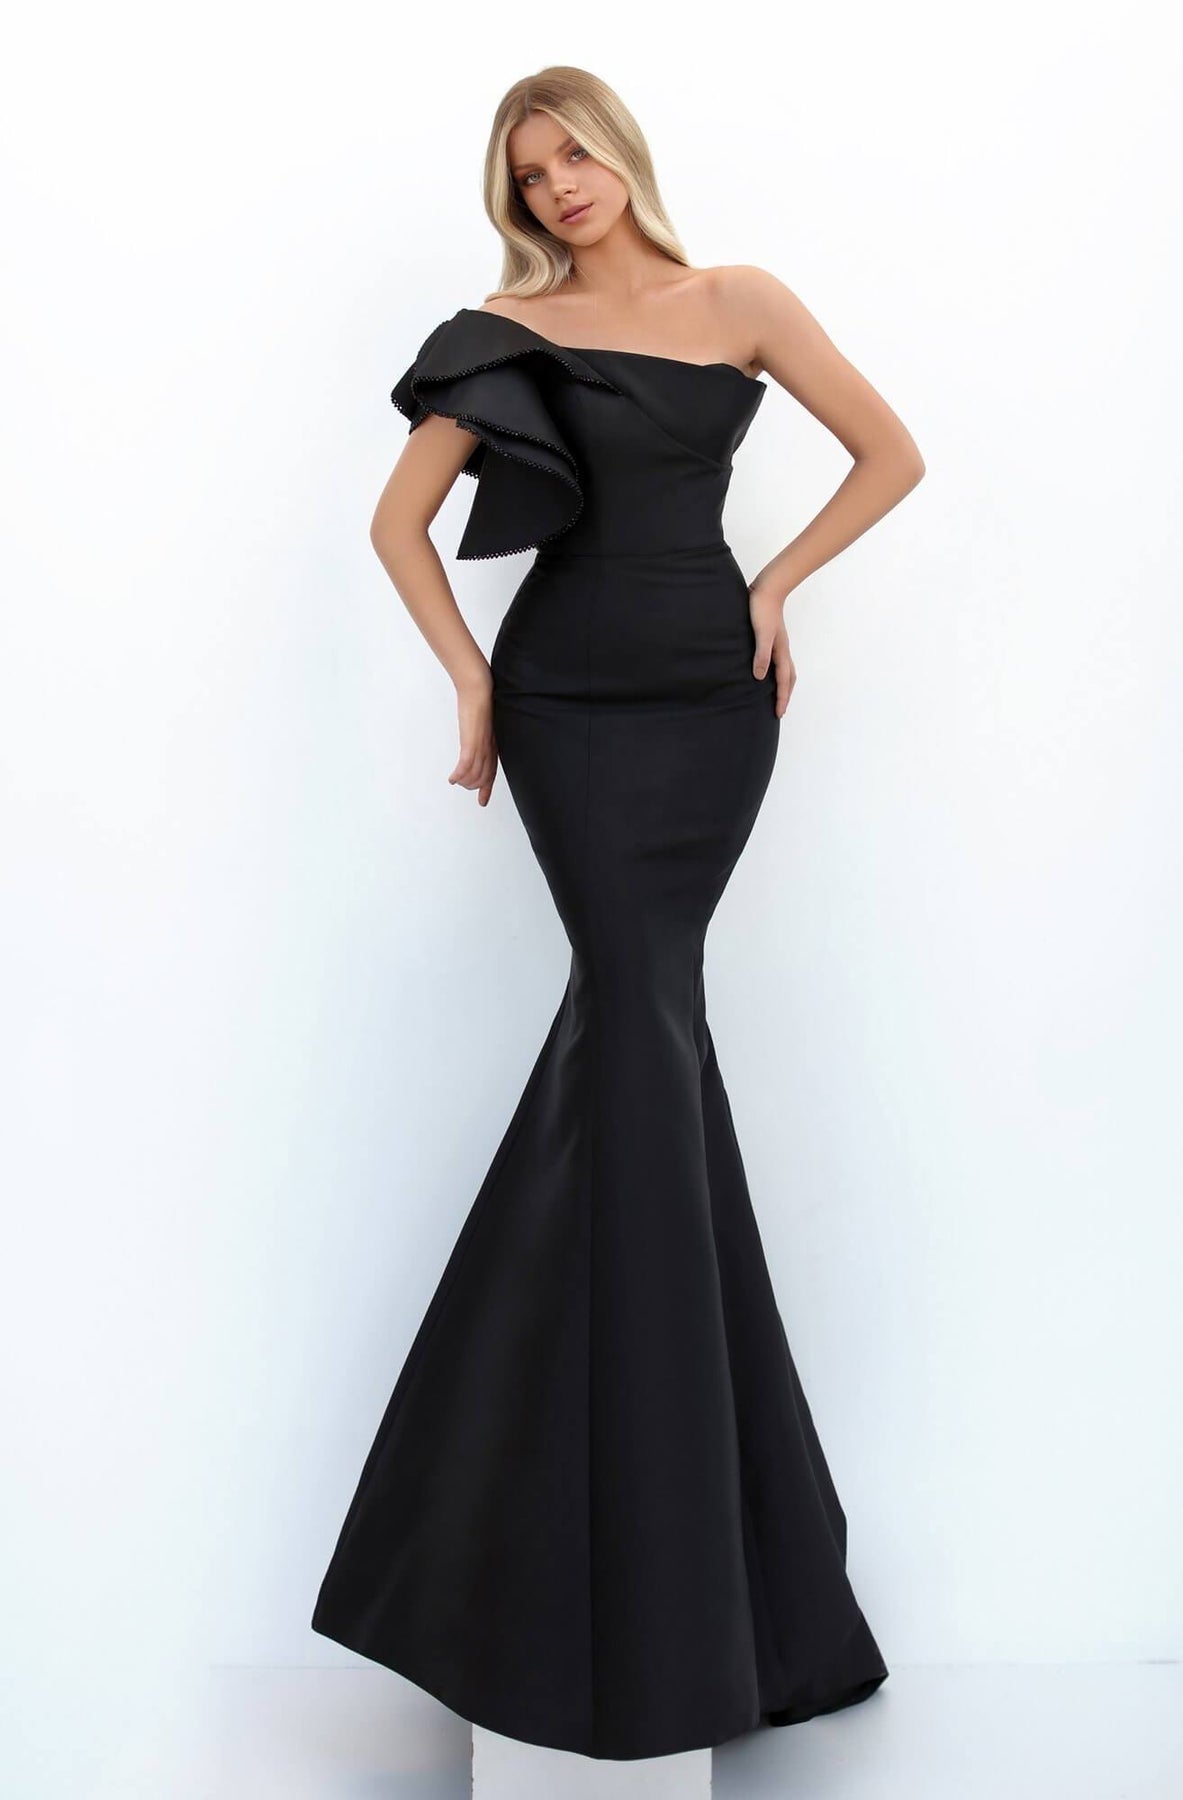 Tarik Ediz - Ruffled Asymmetric Mermaid Evening Dress 50731 In Black